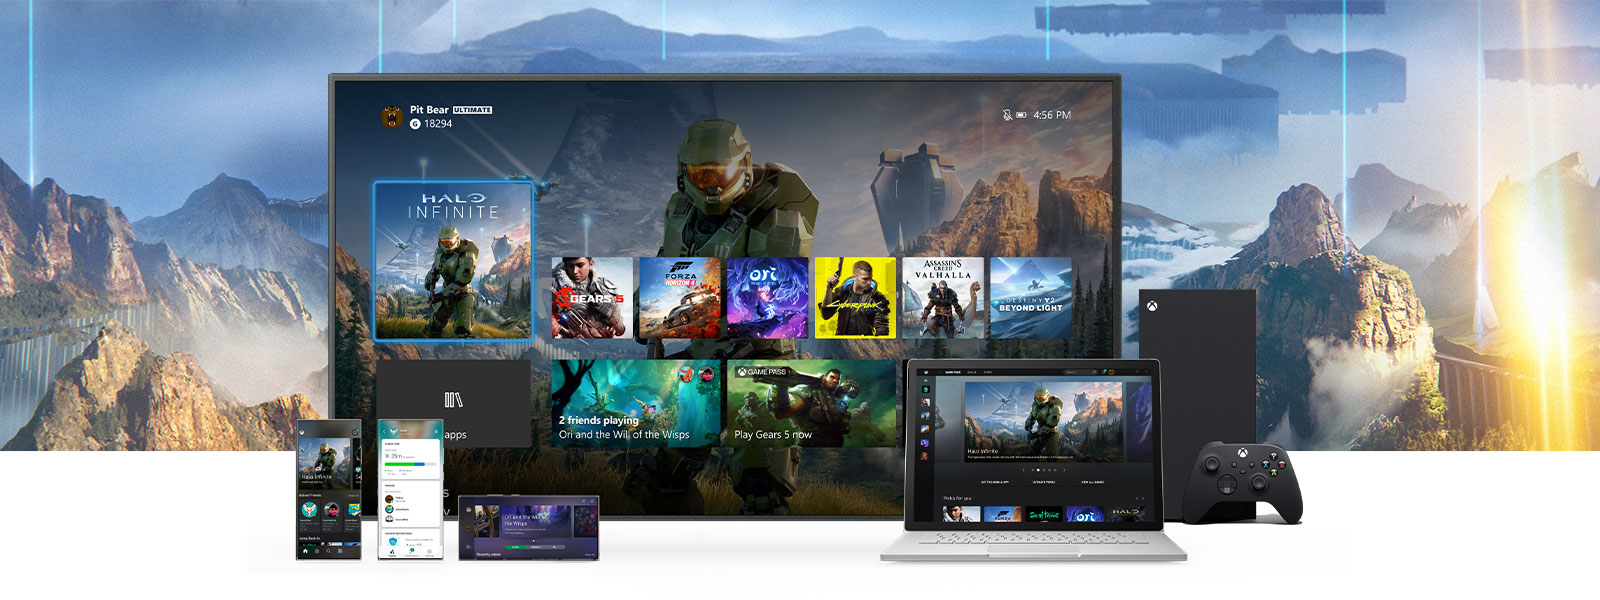 Interfejs główny konsoli Xbox wyświetlony na znajdującym się obok konsoli Xbox Series X telewizorze, przed którym widać dodatkowe urządzenia, takie jak komputer i urządzenia mobilne.